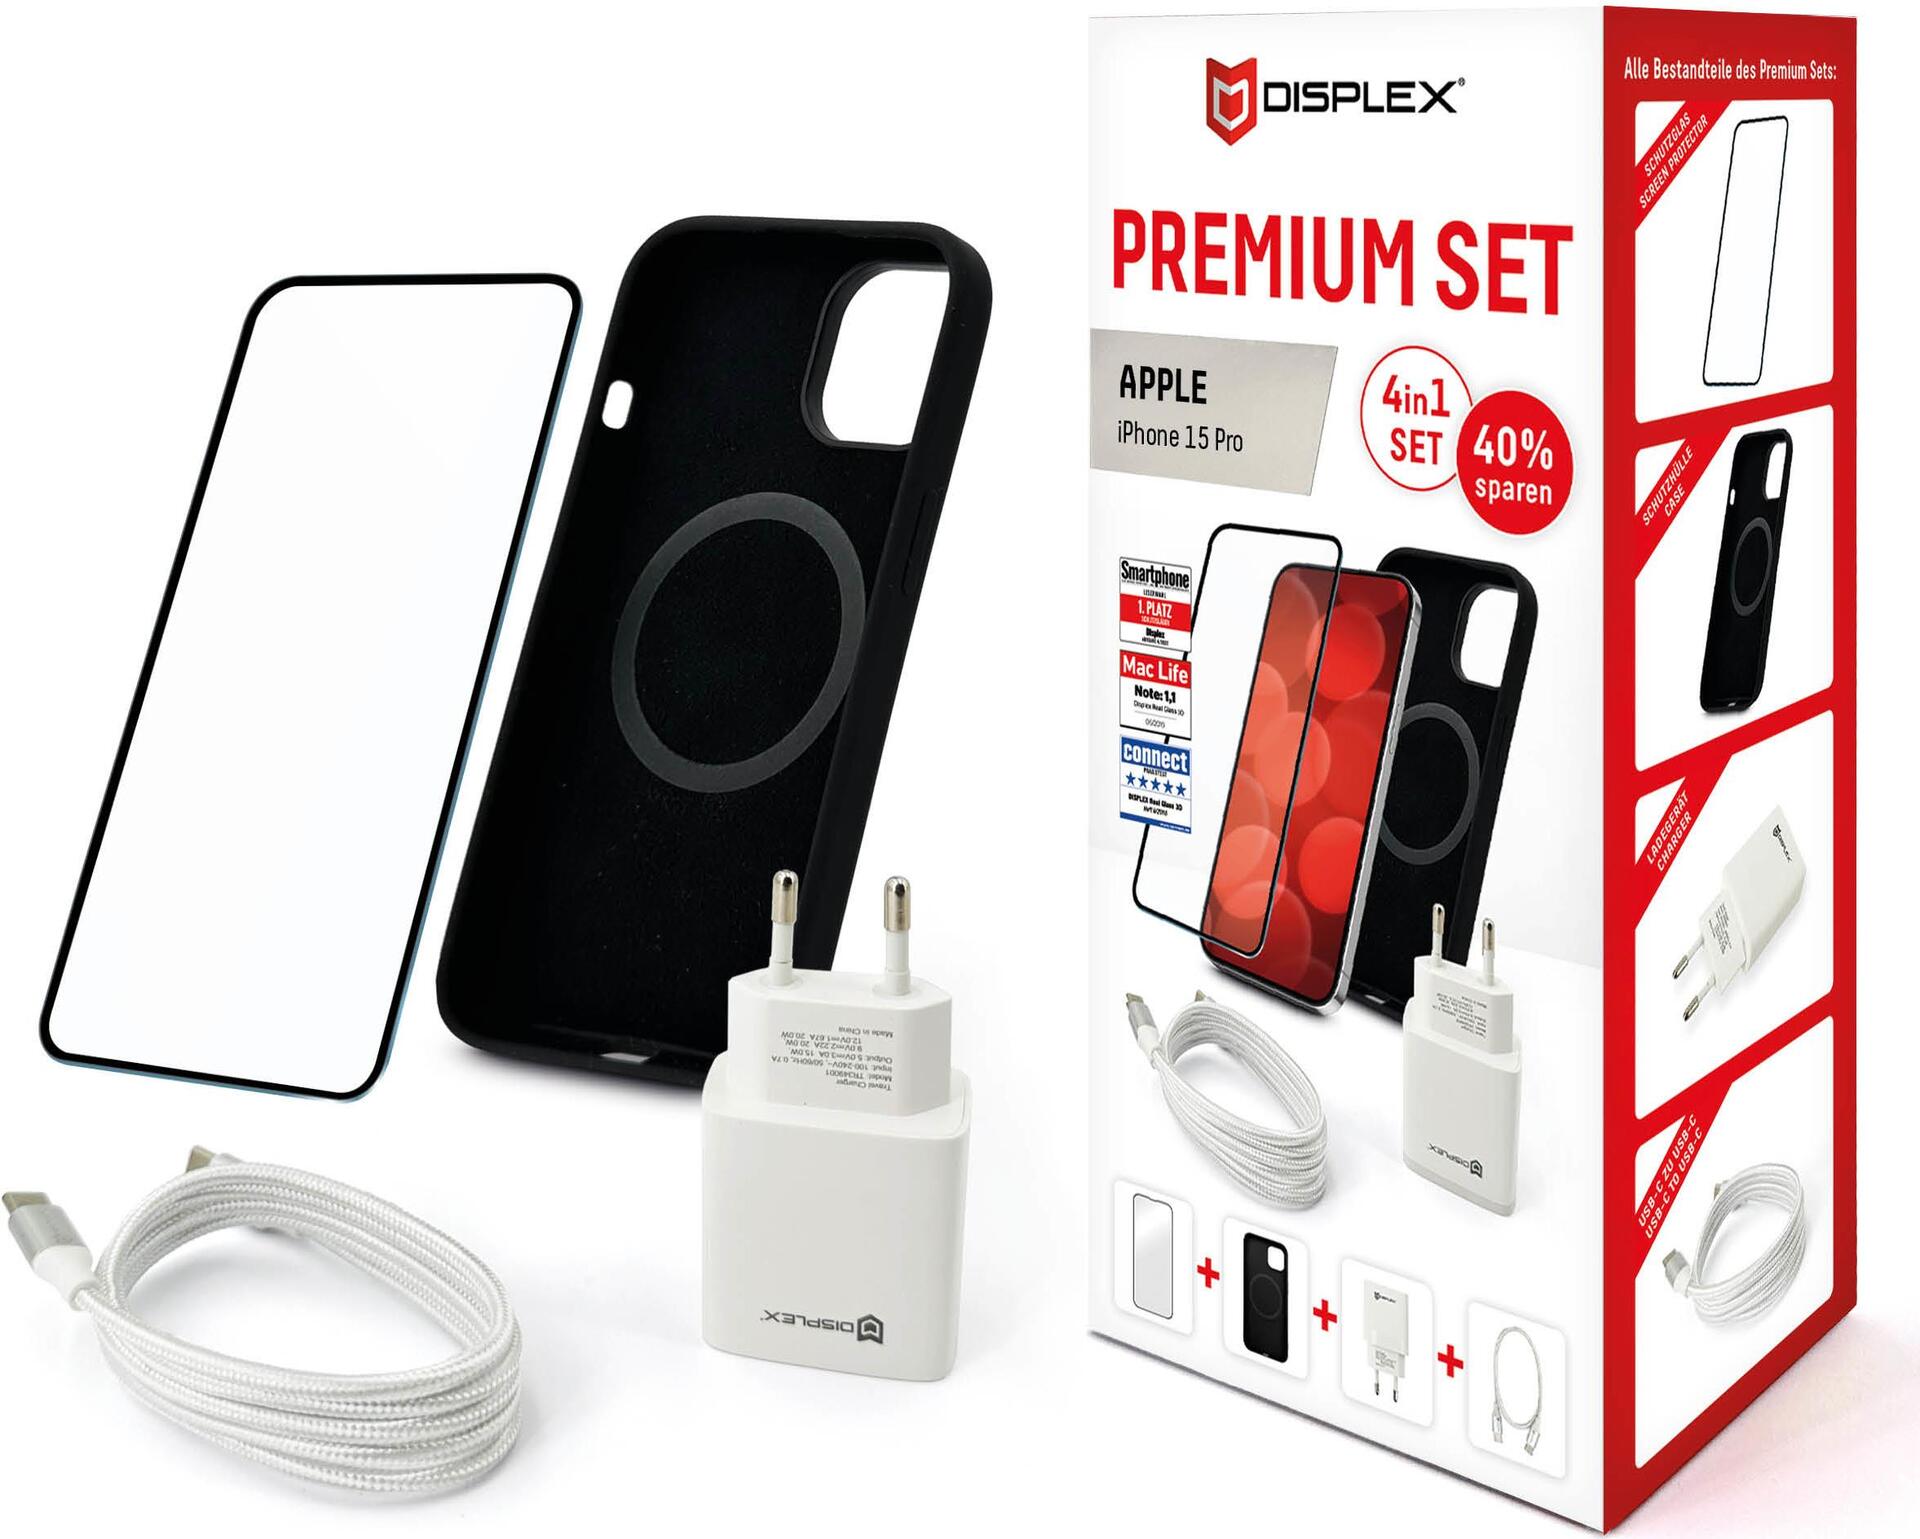 Displex Premium 4 in 1 Set für Apple iPhone 15 Pro (01869)